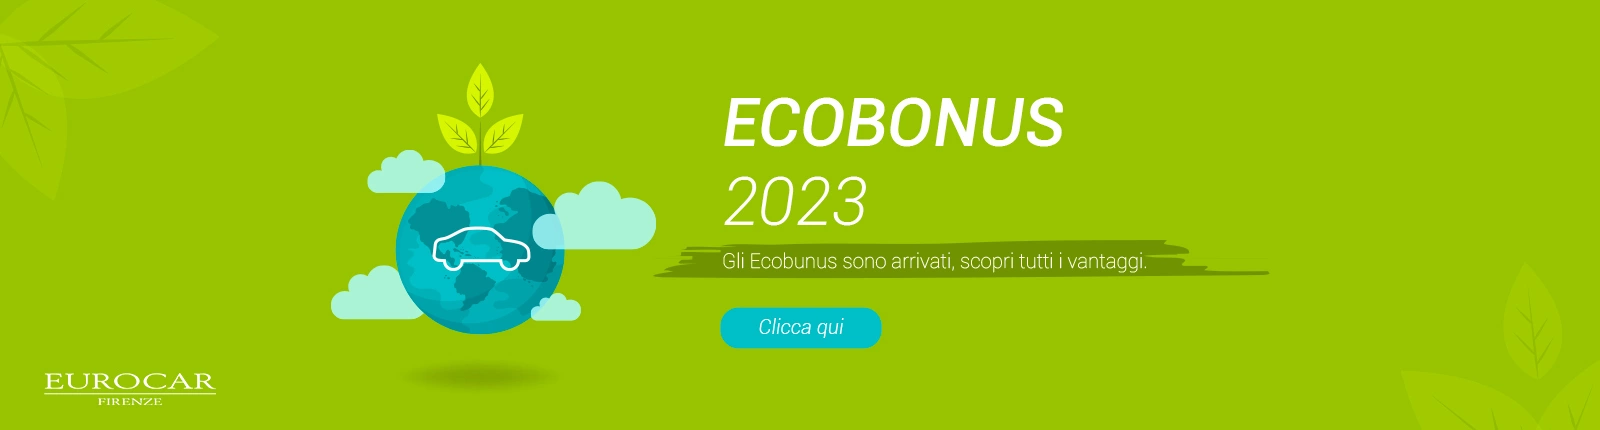 Ecobonus 2023 - Scegli tra Volkswagen, Audi, SEAT, Škoda o Cupra 